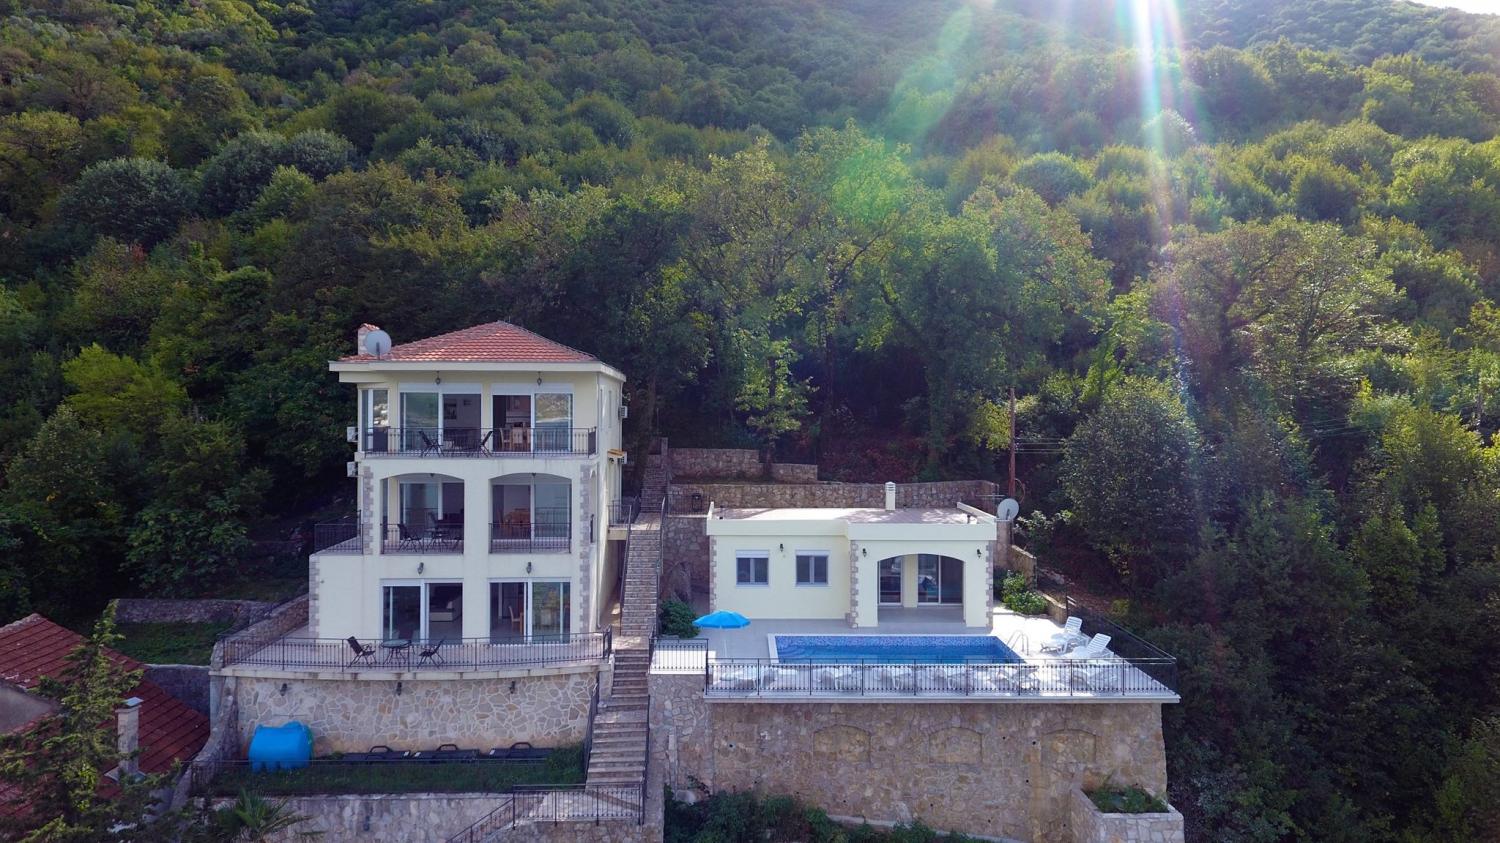 Exkluzív tengerparti villa Kostanicában, 4 apartmannal: mini szálloda stranddal